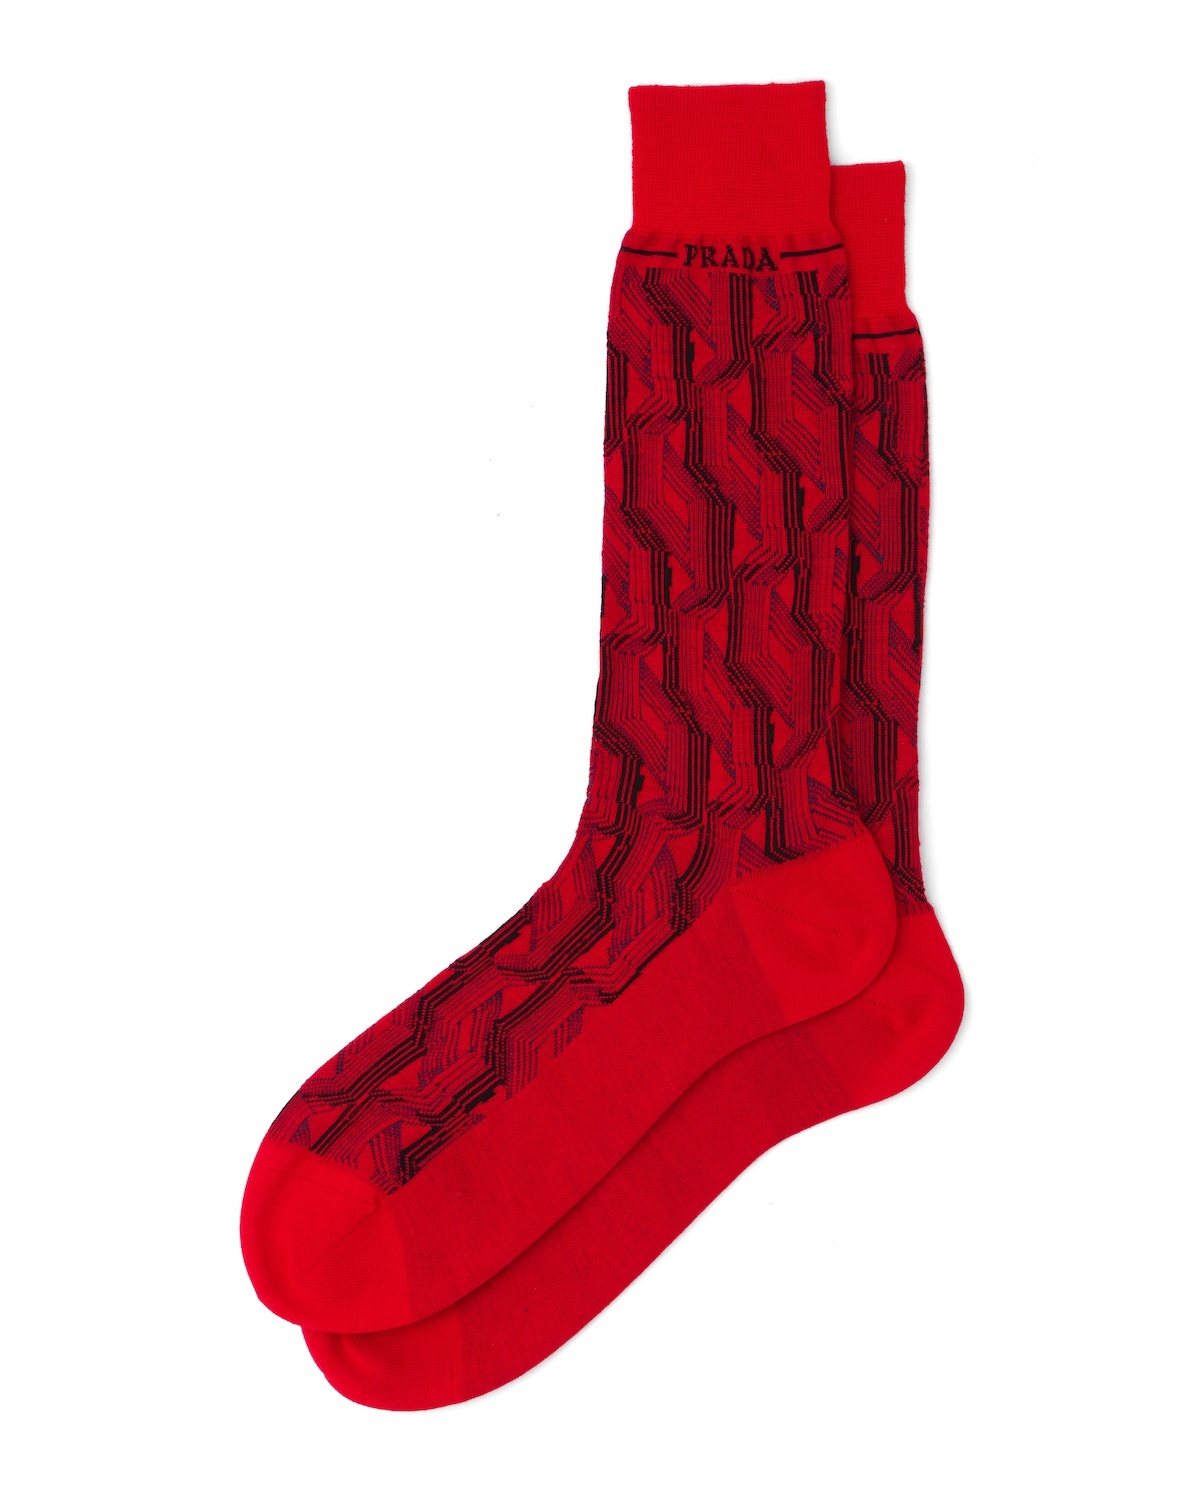 Superfine wool ankle socks - 1